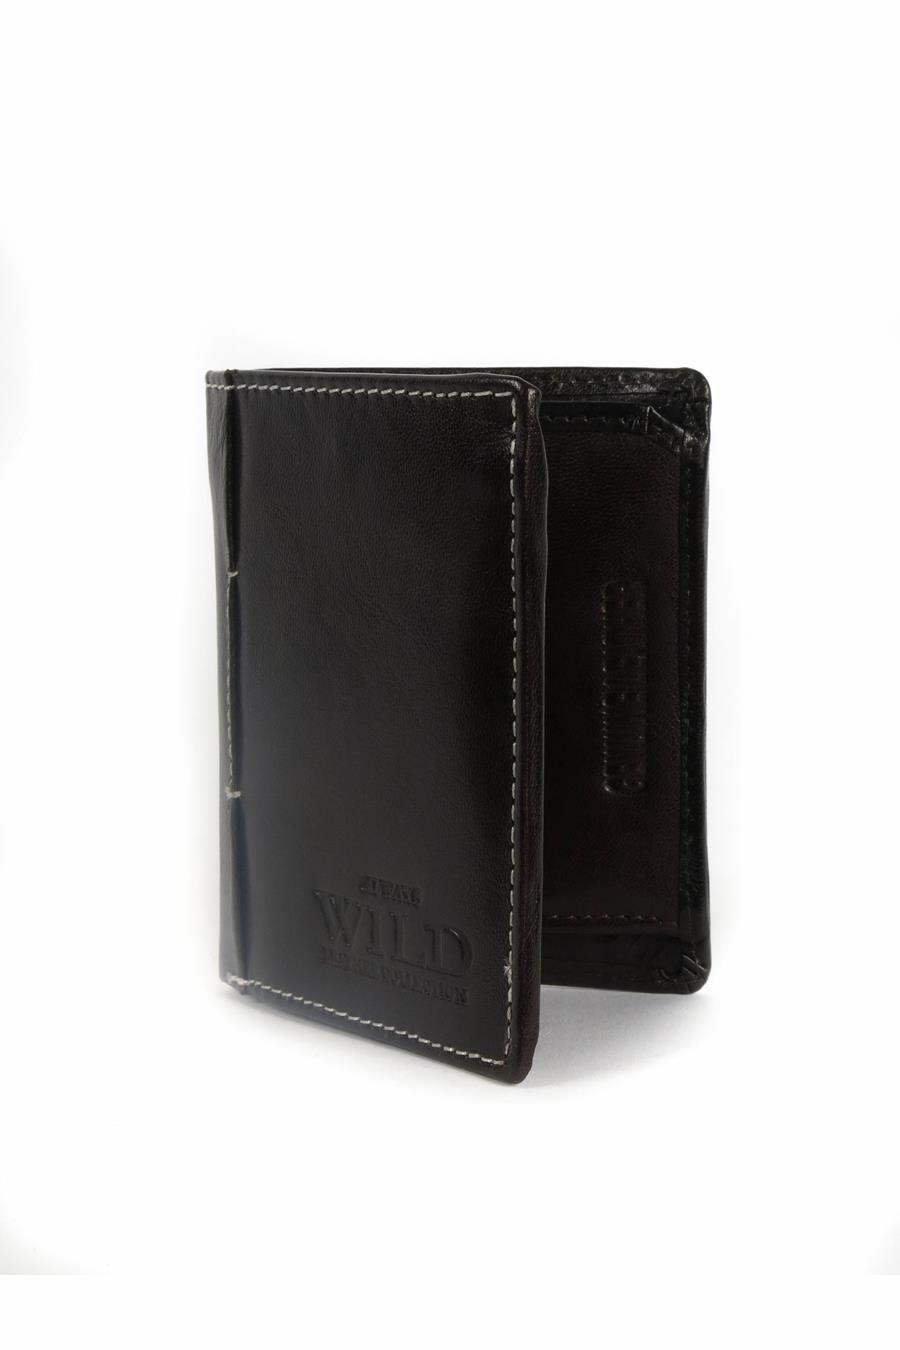 Wallet WILD N915-VTK-BROWN